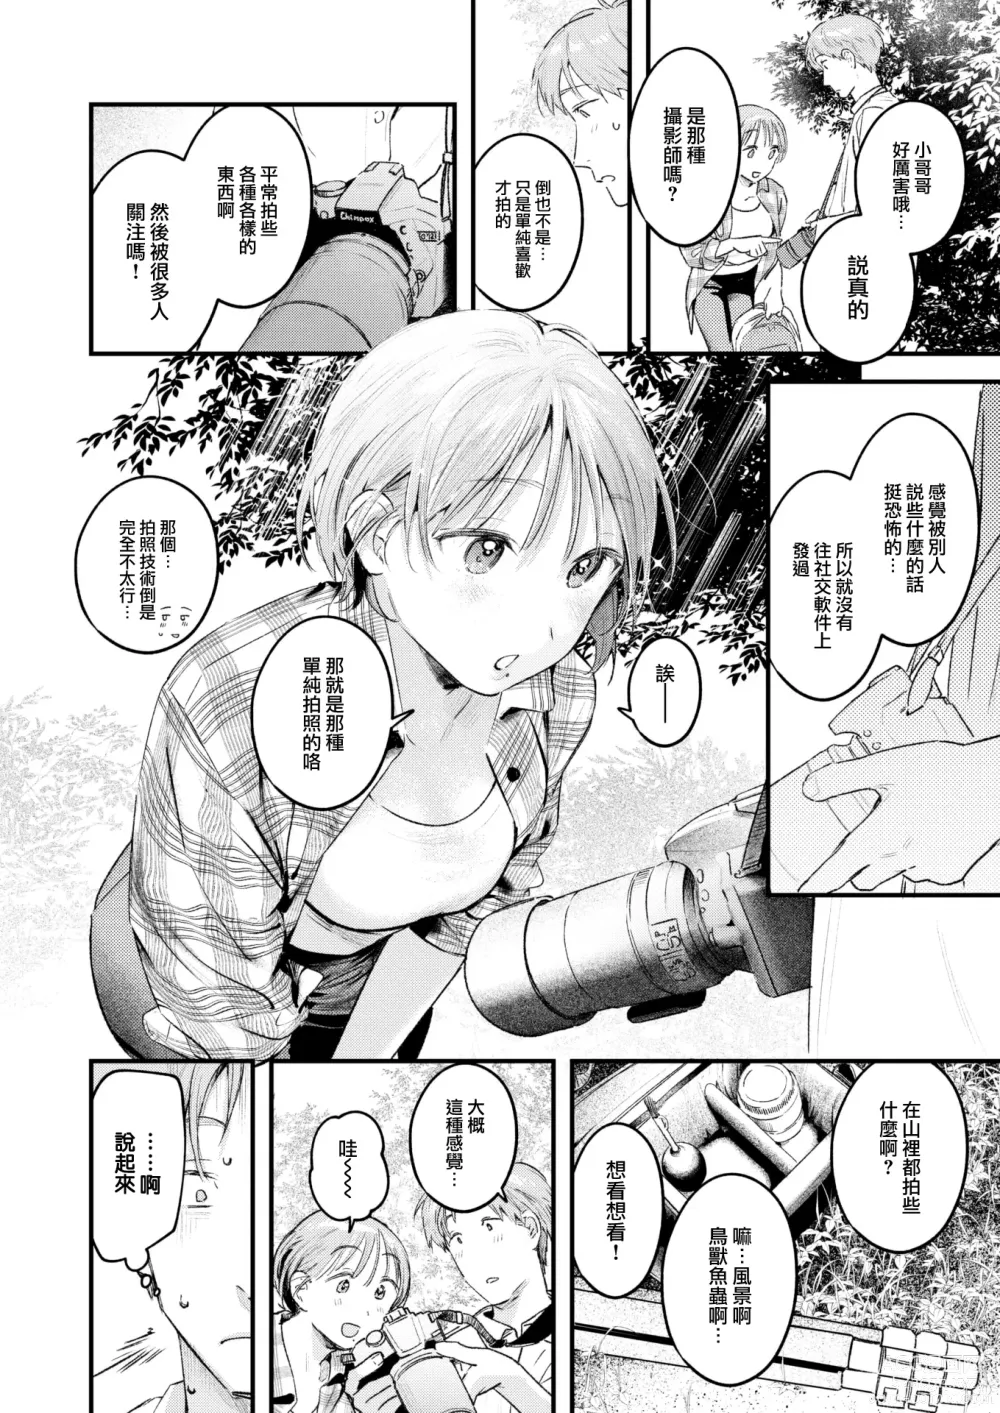 Page 7 of manga Roshutsu to Kando